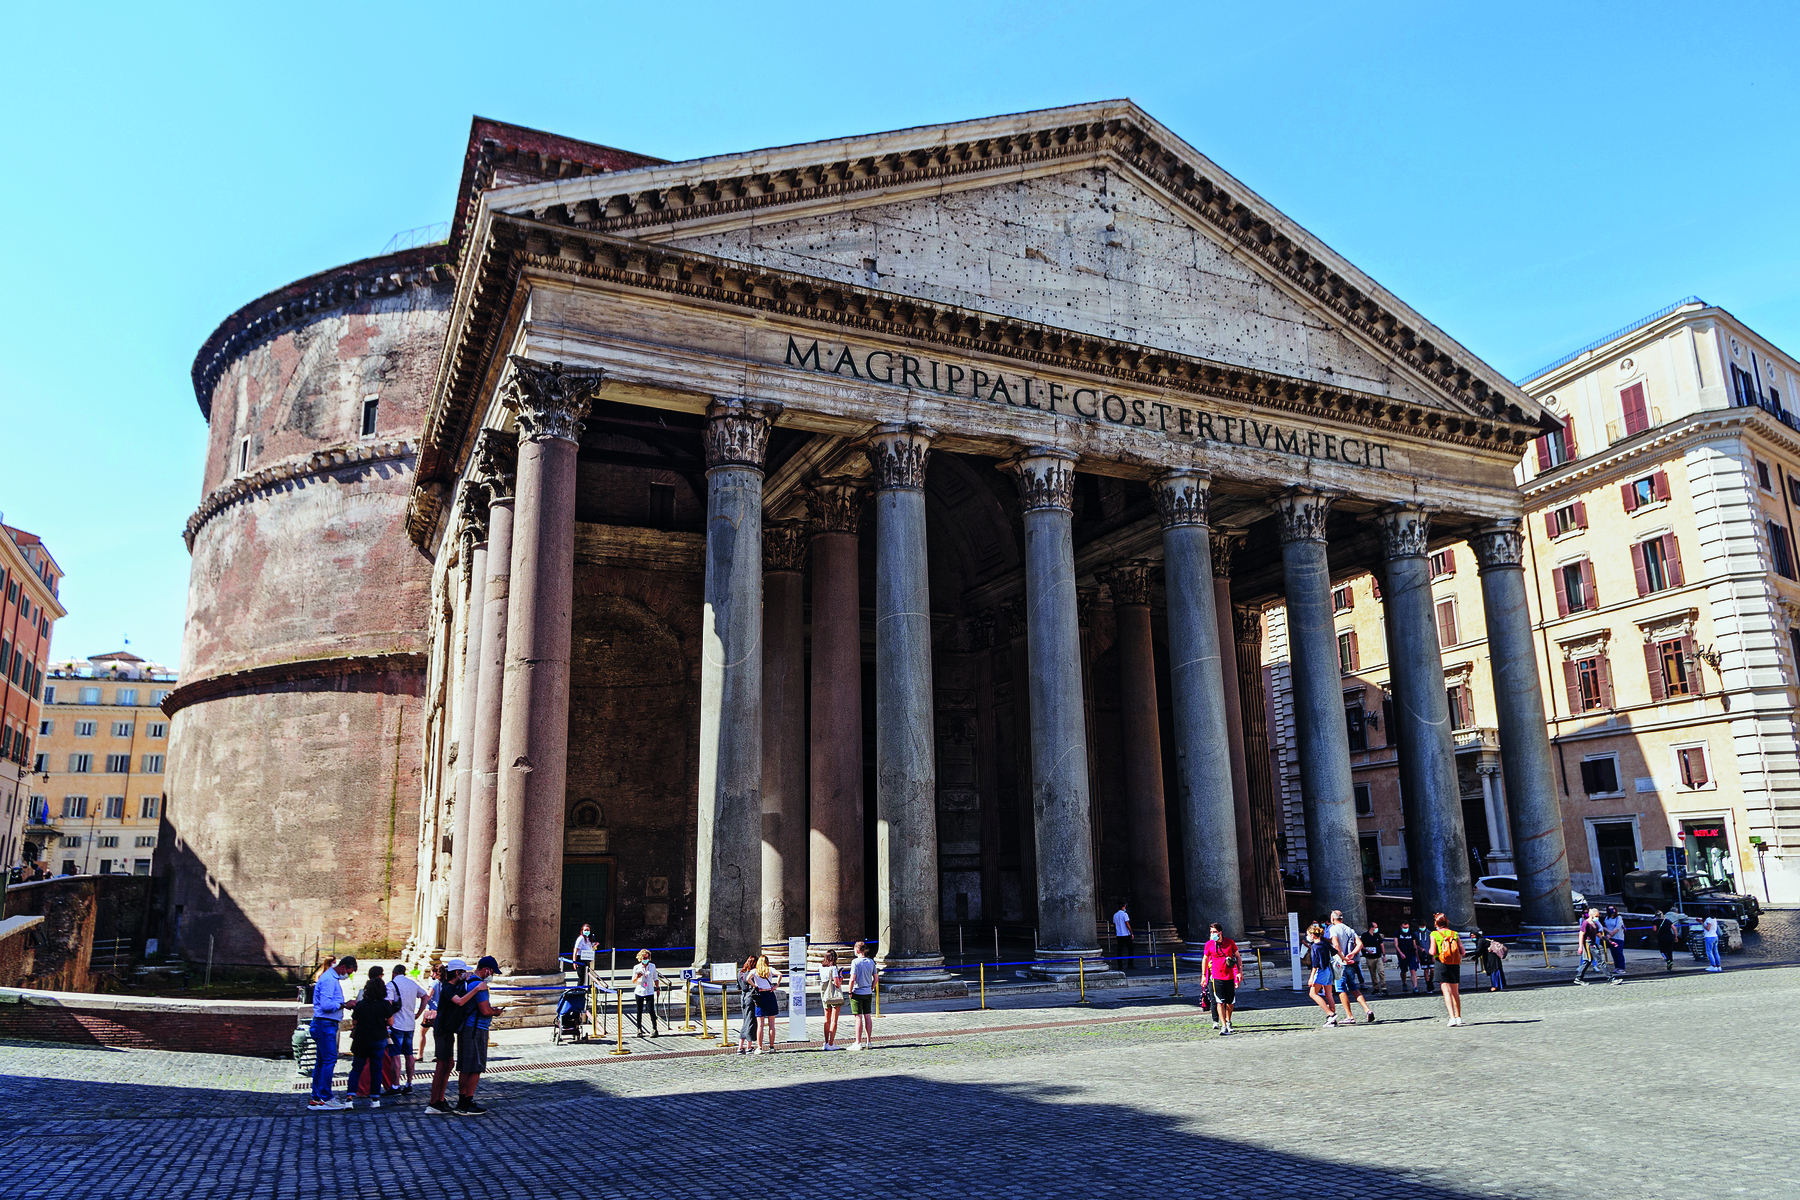 Fotografia. Vista da fachada de um panteão, com colunas frontais, um teto triangular e escritas no topo, na horizontal. À frente, pessoas transitam.